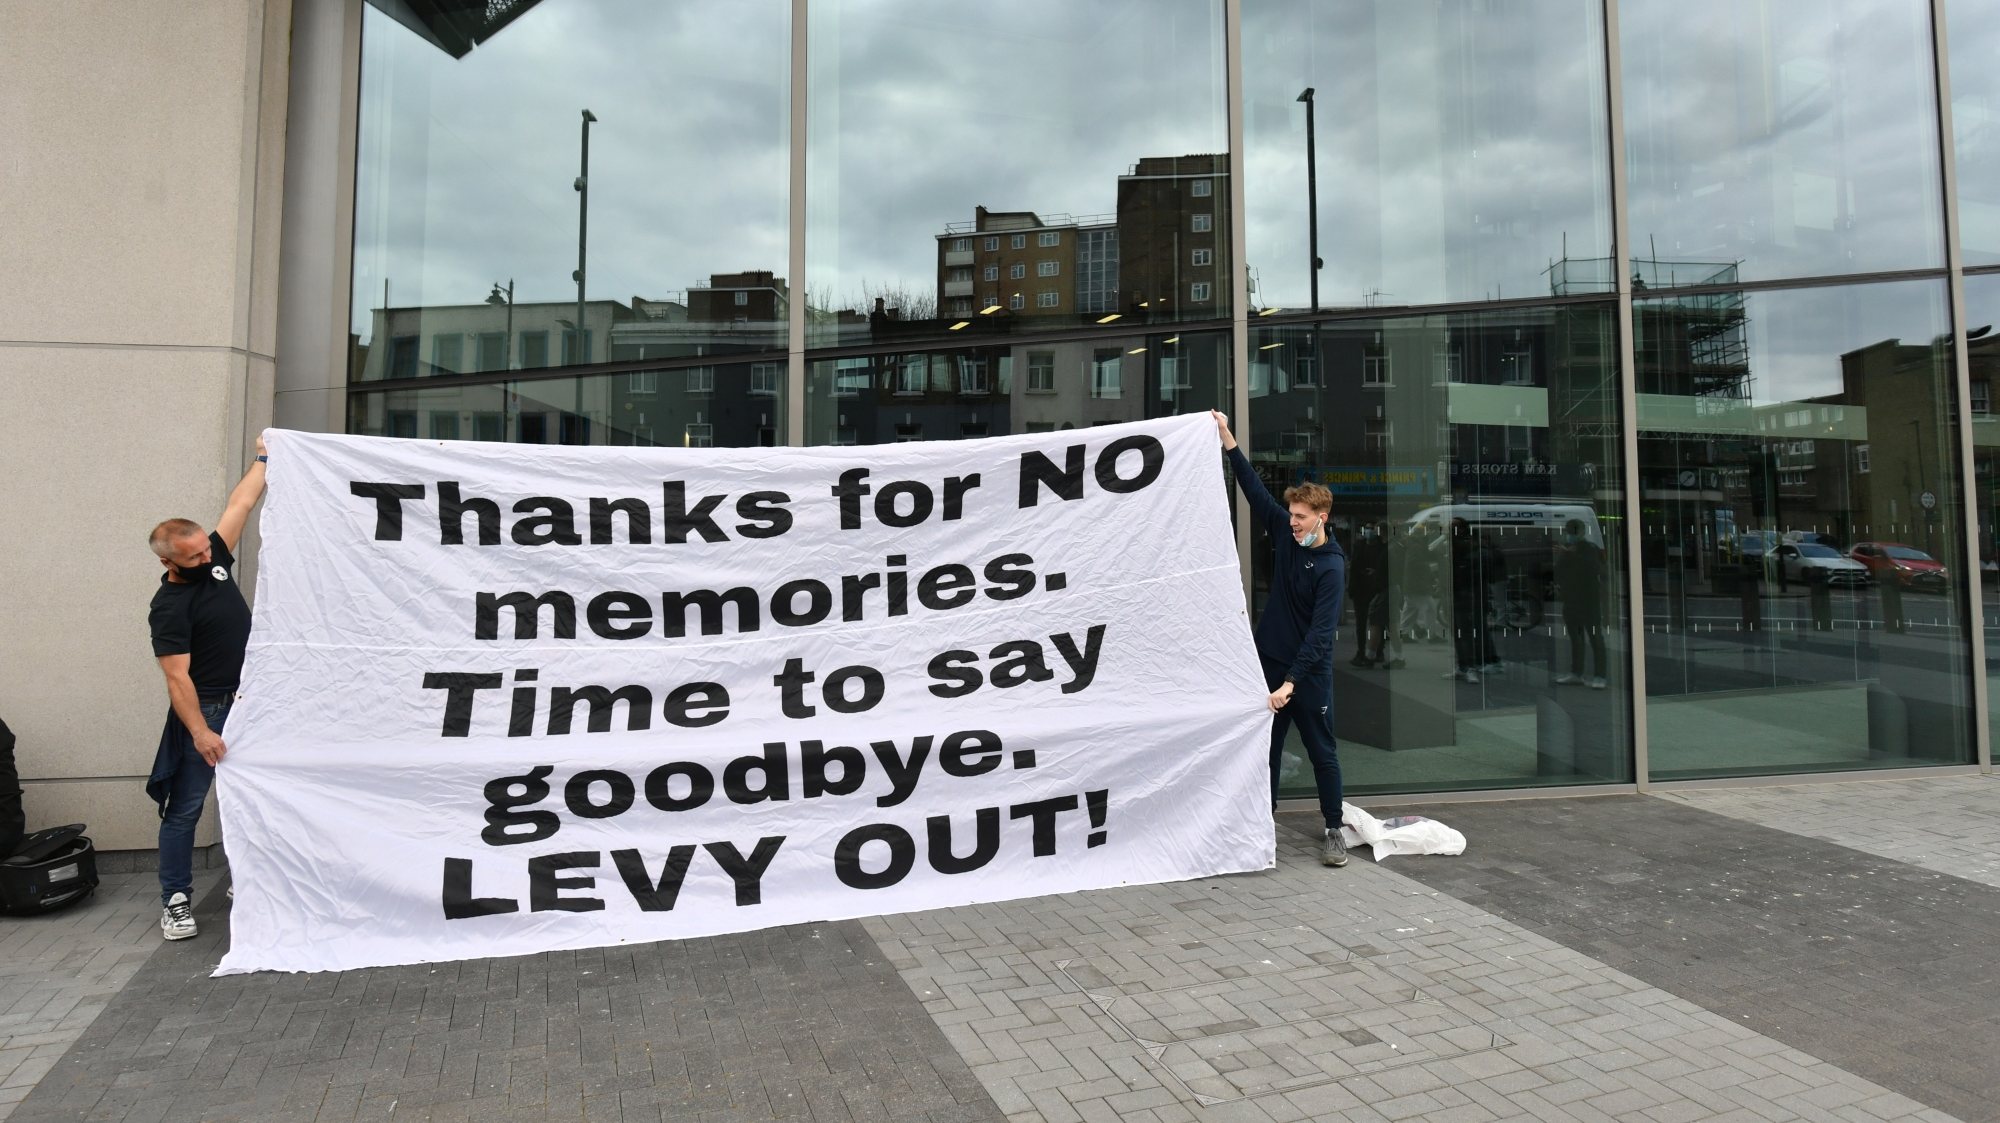 Adeptos do Tottenham manifestaram-se em frente ao estádio antes do jogo, pedindo a saída de Daniel Levy da presidência do clube